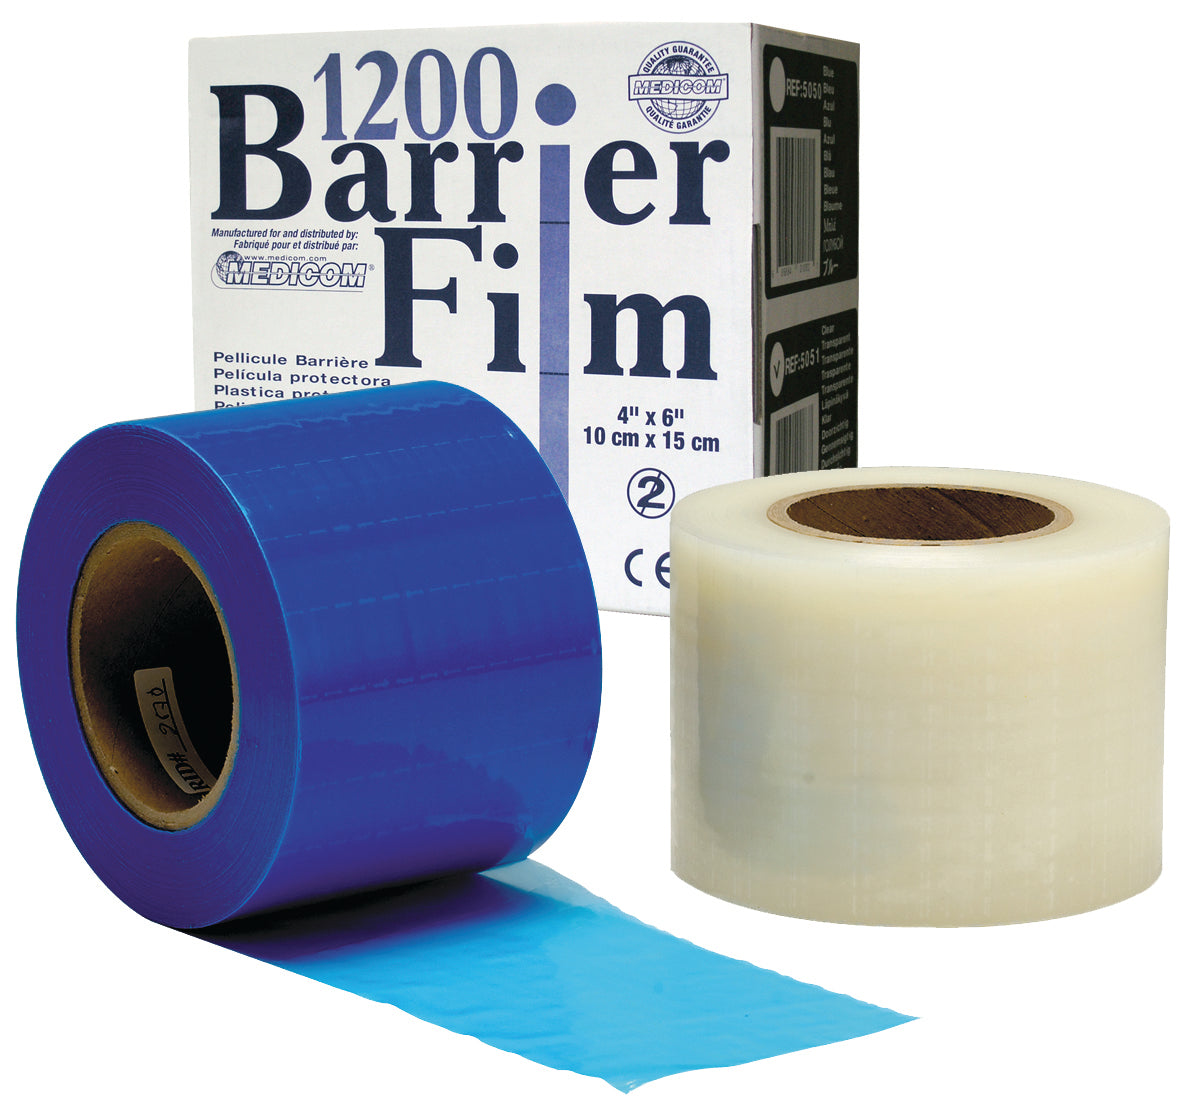 Medicom Barrier Film 1200m